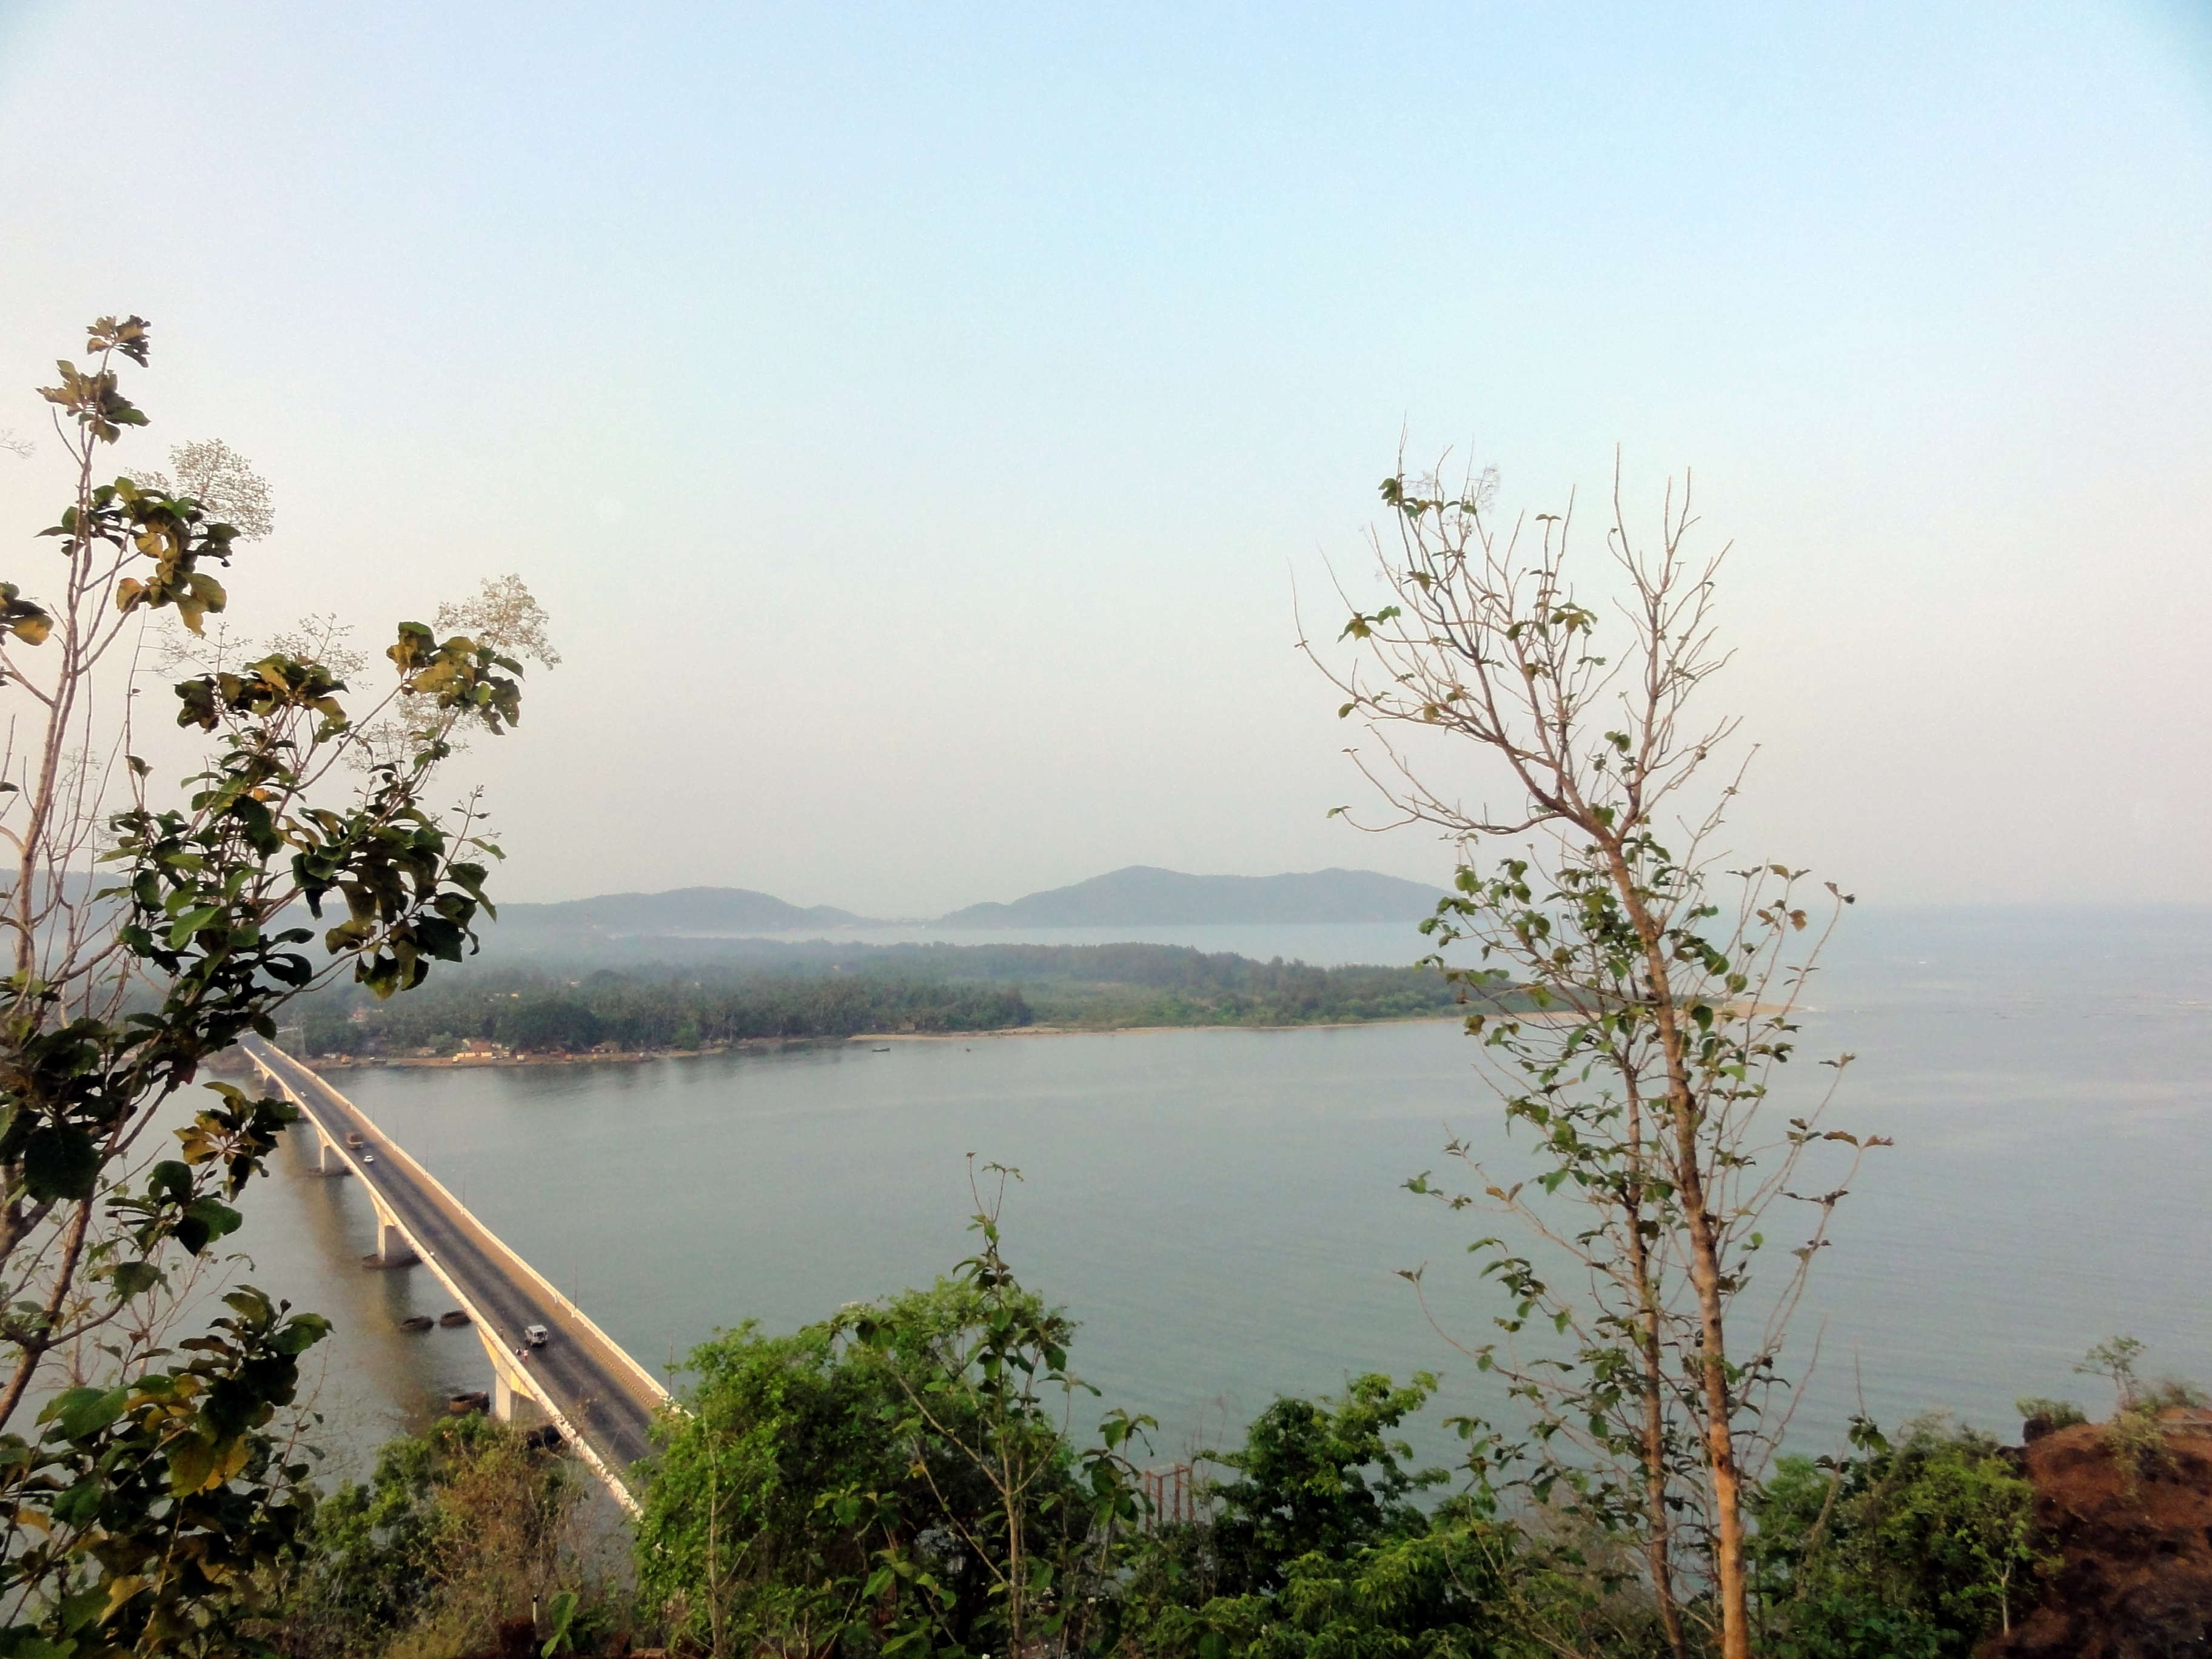 Kali River Bridge and Estuary Point